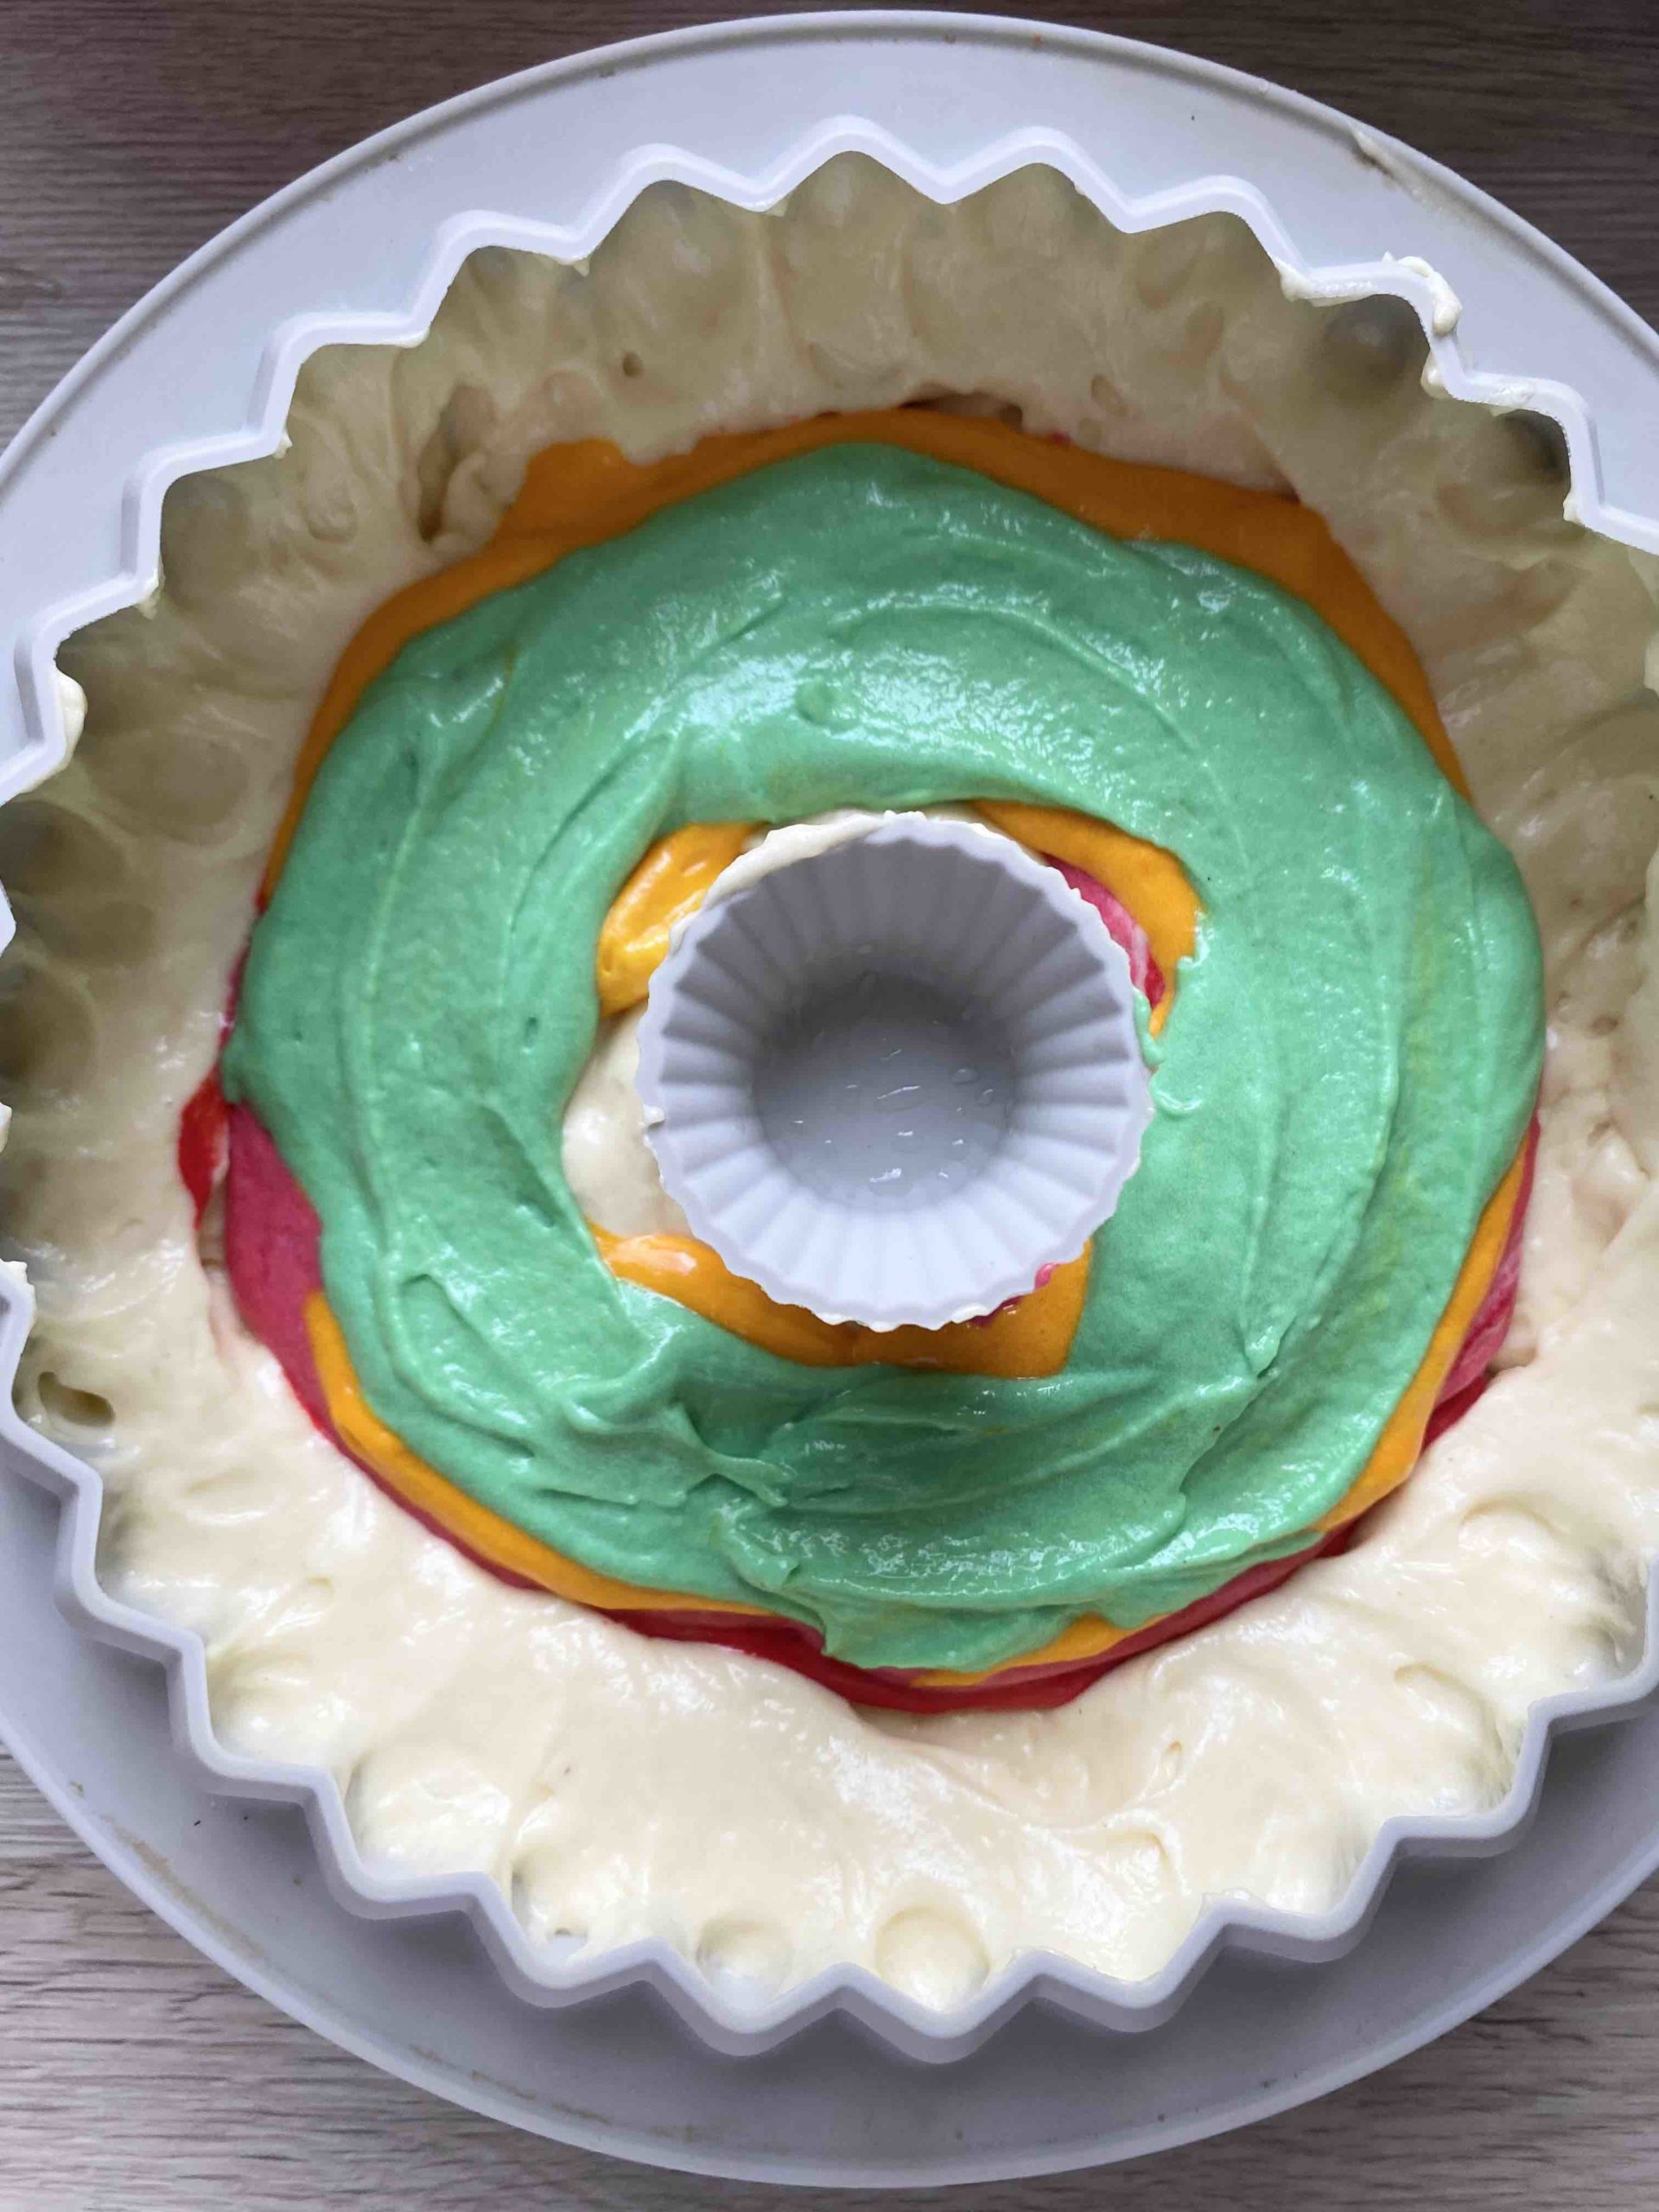 Ein Surprise Cake entsteht mit einem versteckten Regenbogen.